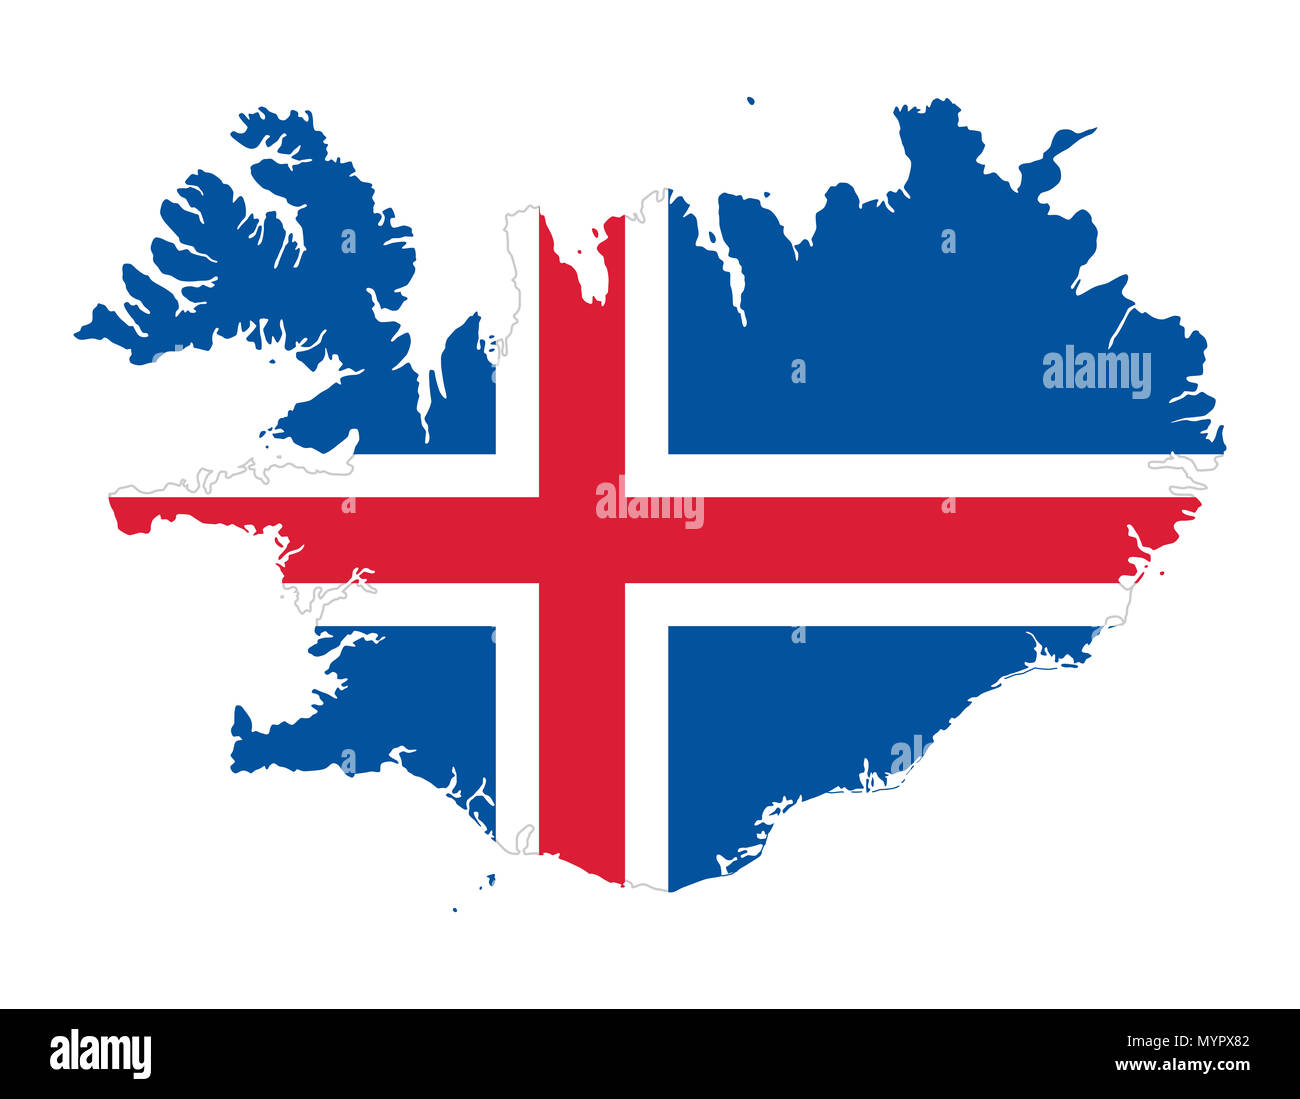 Flagge Island im Land Silhouette. Blaues Feld mit weißem Rand rot Nordic cross. Überblick über Island, einer nordischen Insel Land. Stockfoto